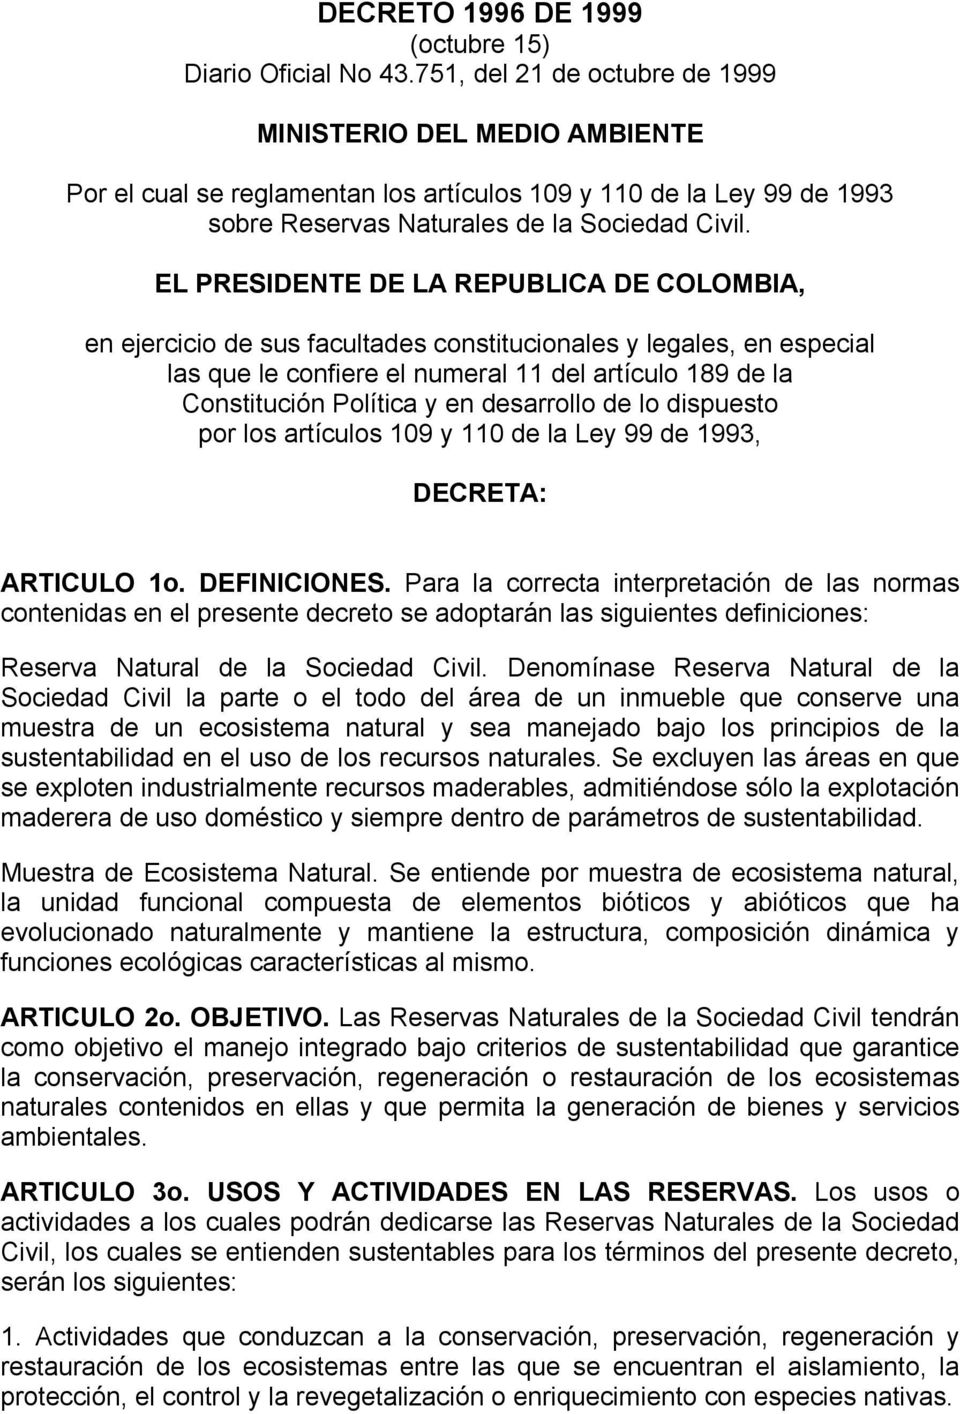 EL PRESIDENTE DE LA REPUBLICA DE COLOMBIA, en ejercicio de sus facultades constitucionales y legales, en especial las que le confiere el numeral 11 del artículo 189 de la Constitución Política y en